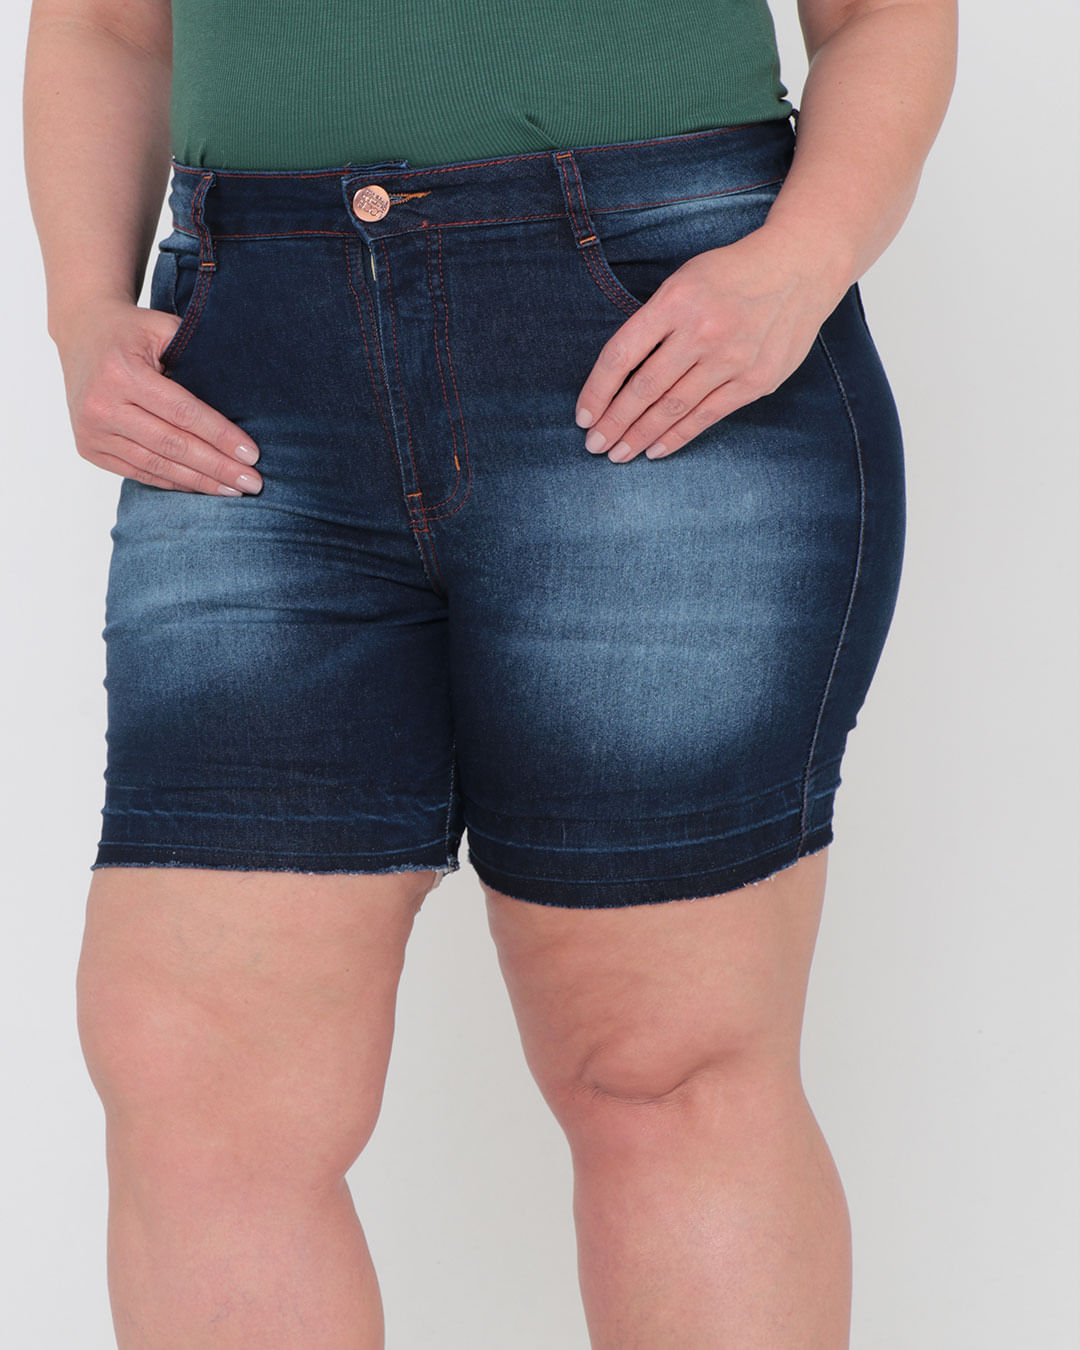 Short-Jeans-Feminino-Plus-Size-Detalhe-Na-Barra-Azul